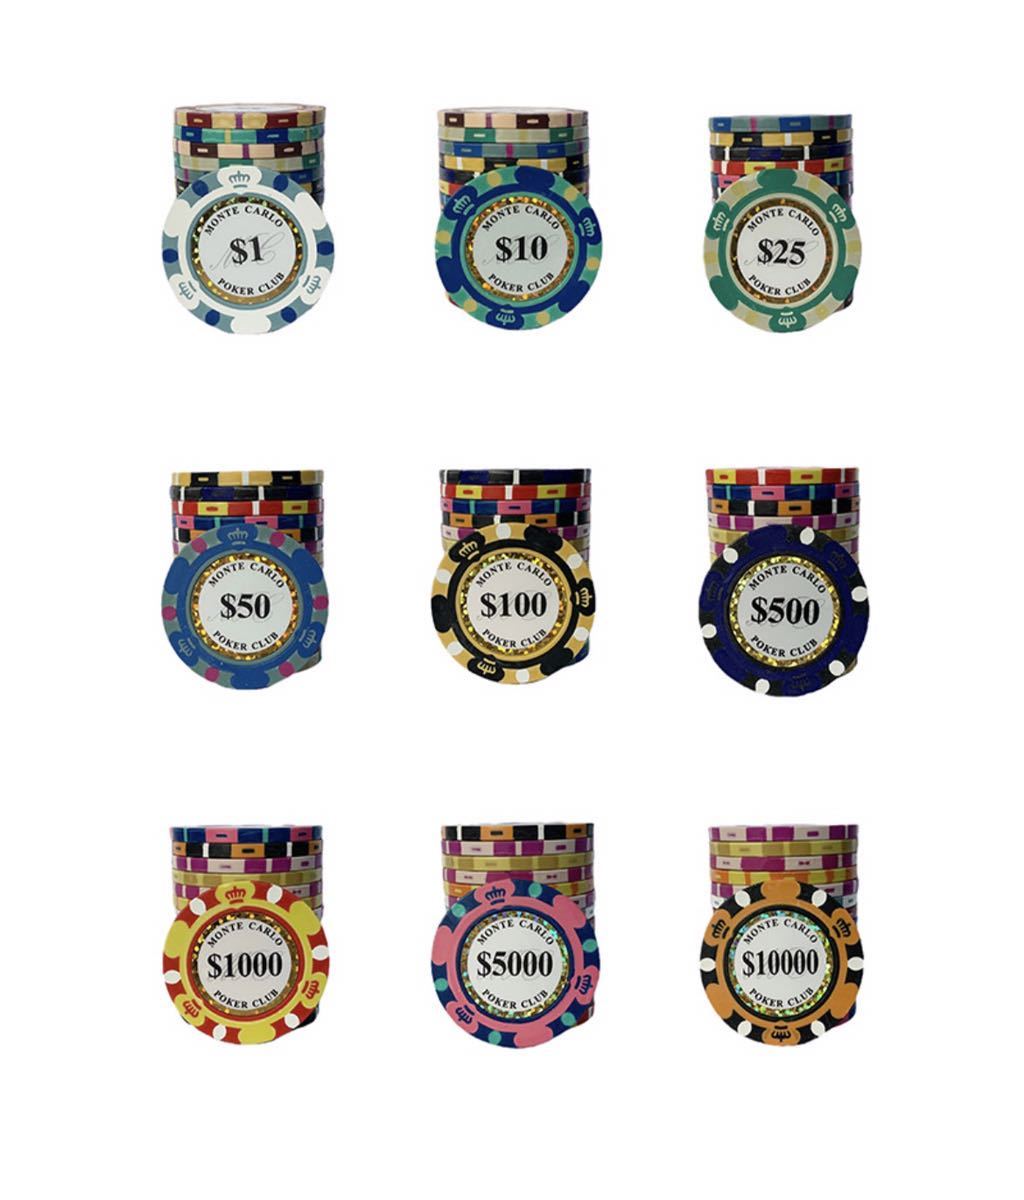 ポーカーチップ ★11種類★ モンテカルロ ゴルフマーカー グリーンマーカー カジノ リアルチップ 重量感_画像3